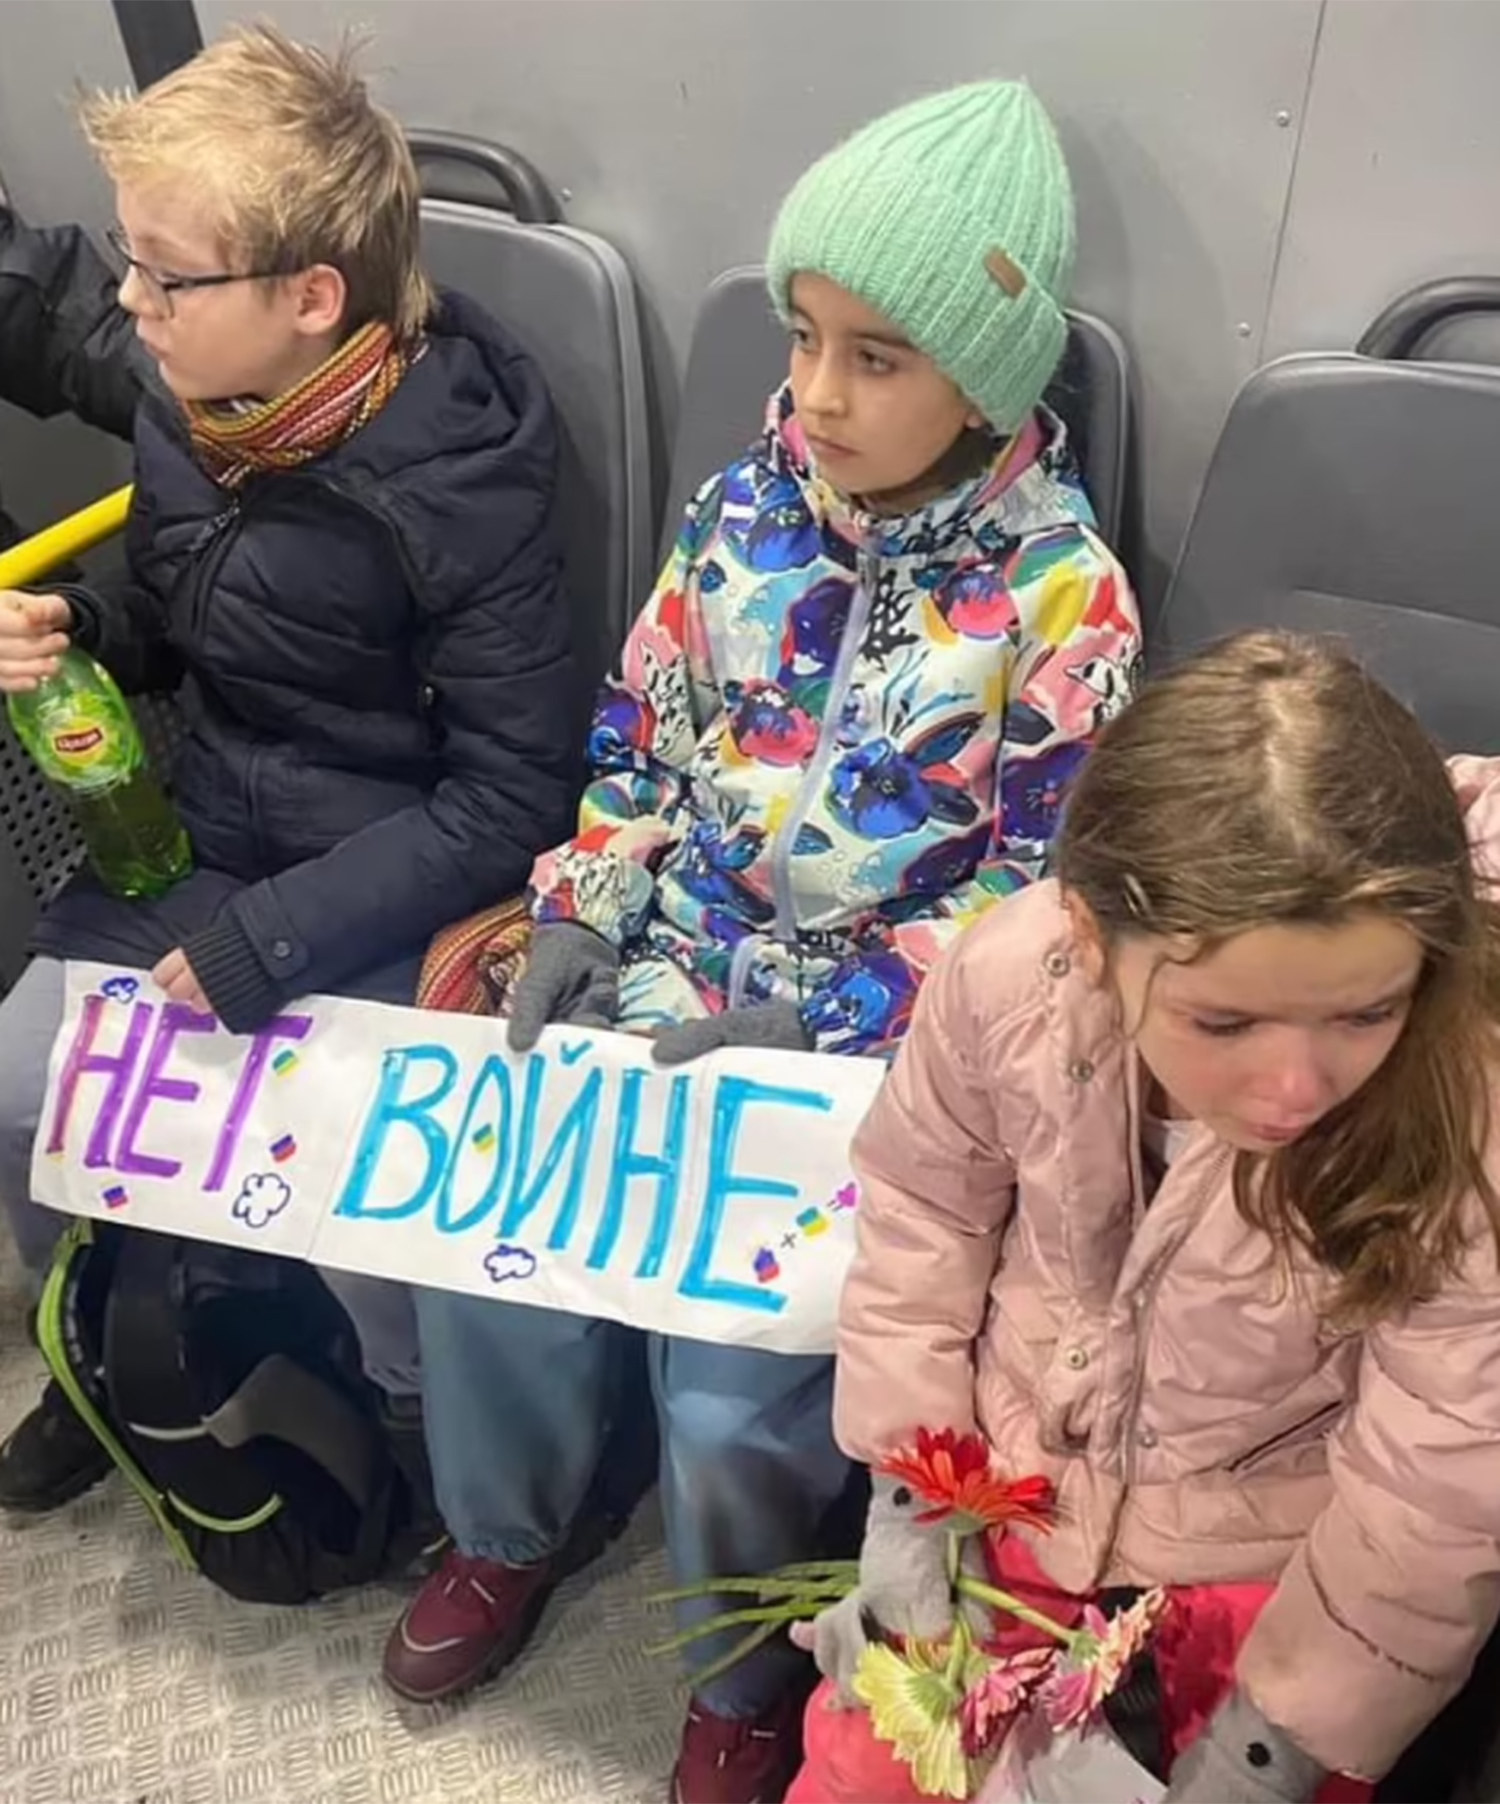 Los niños se encontraban entre los cientos de manifestantes contra la guerra, arrestados y encarcelados por la policía en Rusia